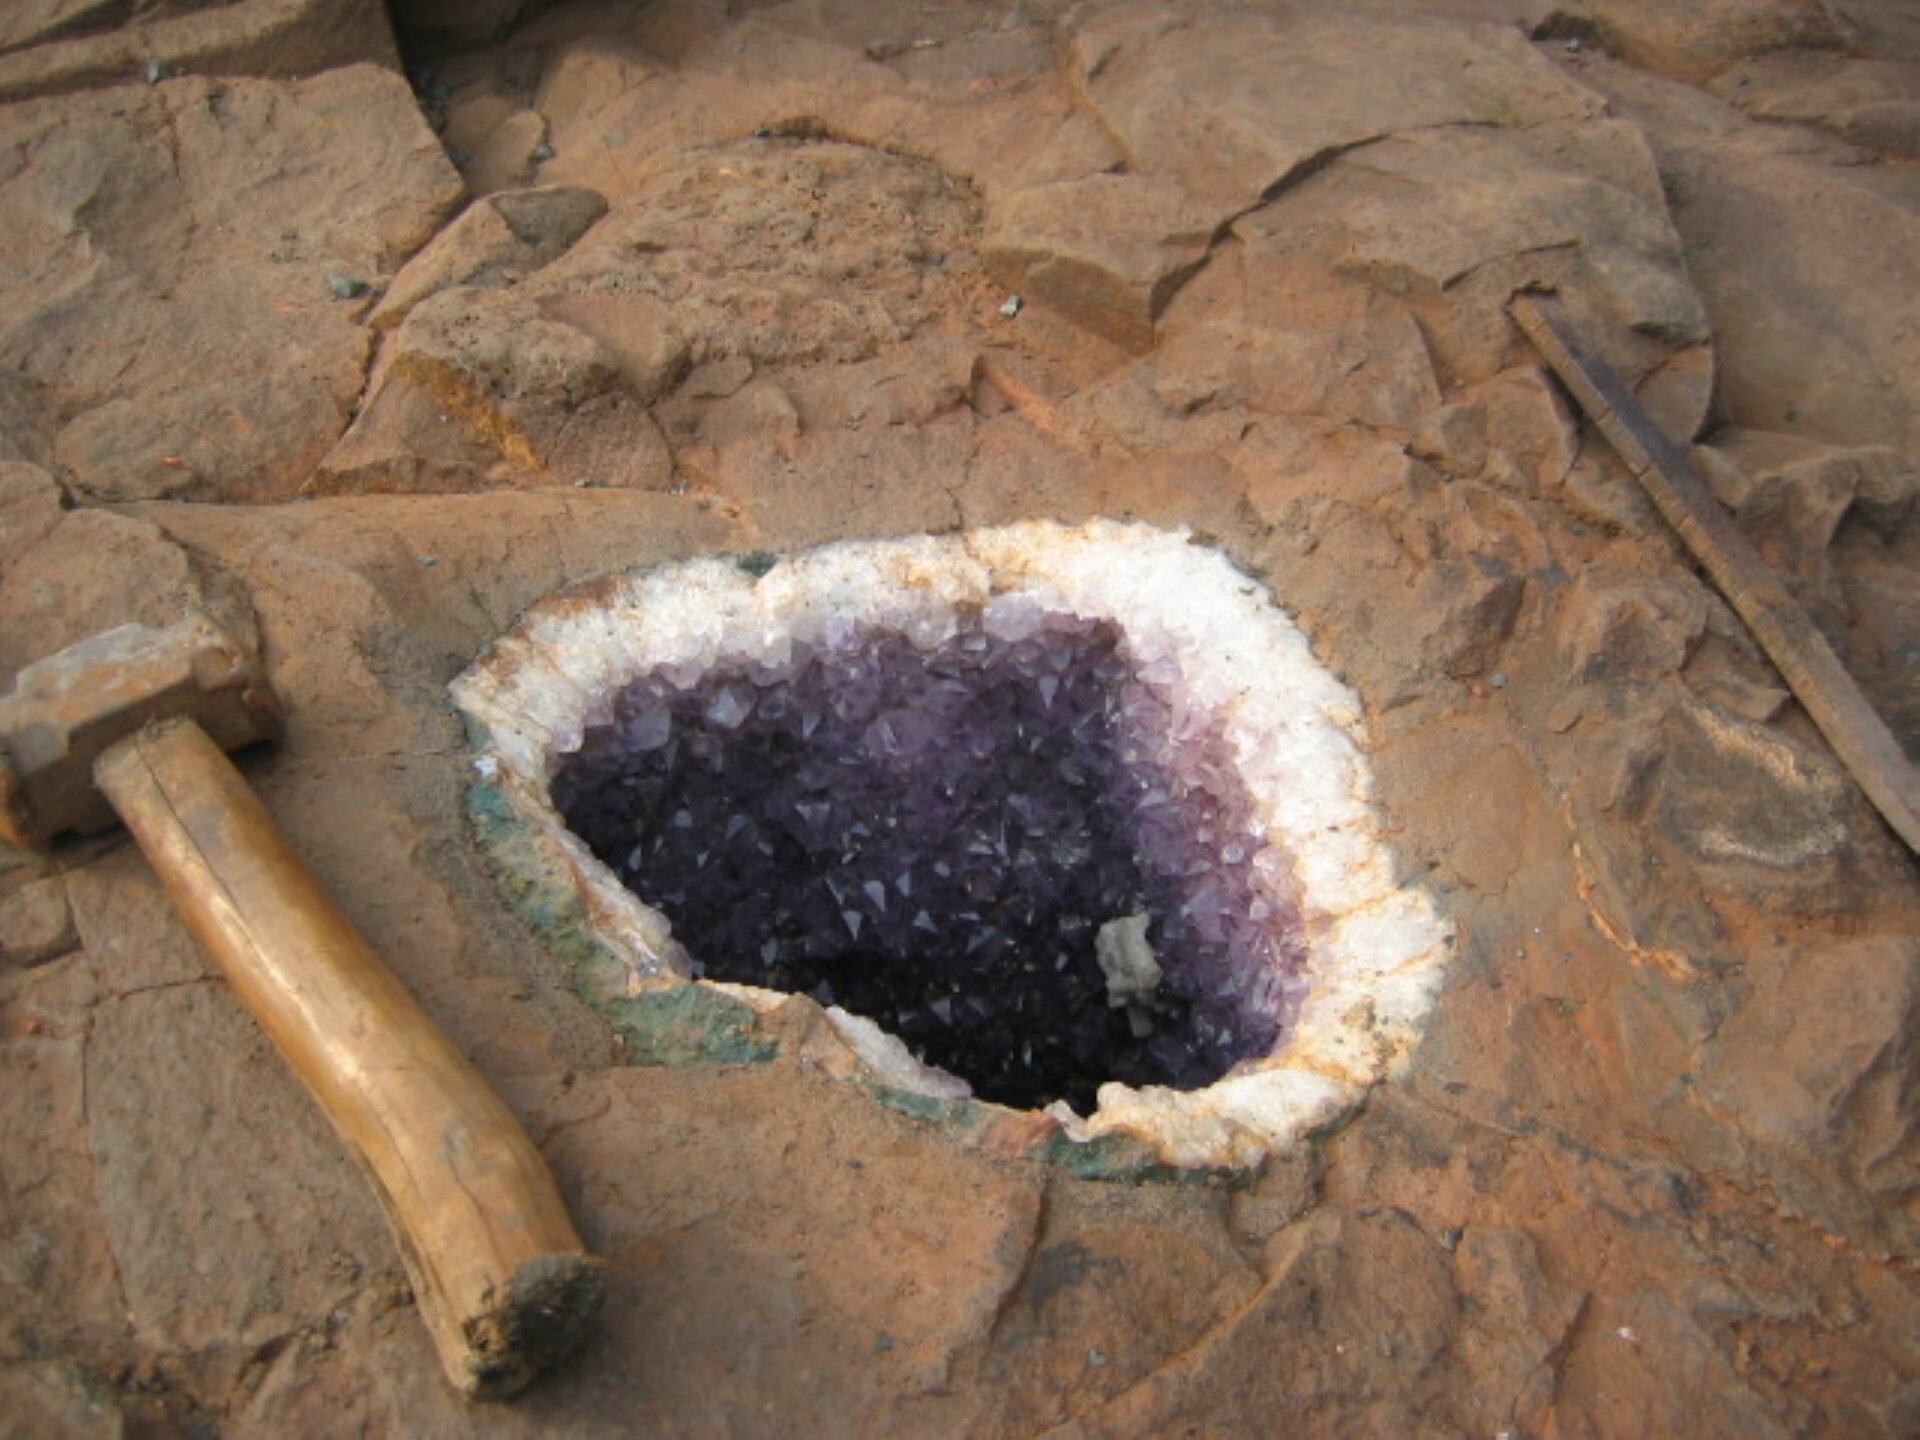 Rys. a. Zdjęcie przedstawia skałę o barwie szaro‑brązowej. Pośrodku skały wyrąbano otwór, którego brzegi są białe i błyszczące, a centrum wypełniają jasno i ciemno‑fioletowe kryształki, odbijające światło. 